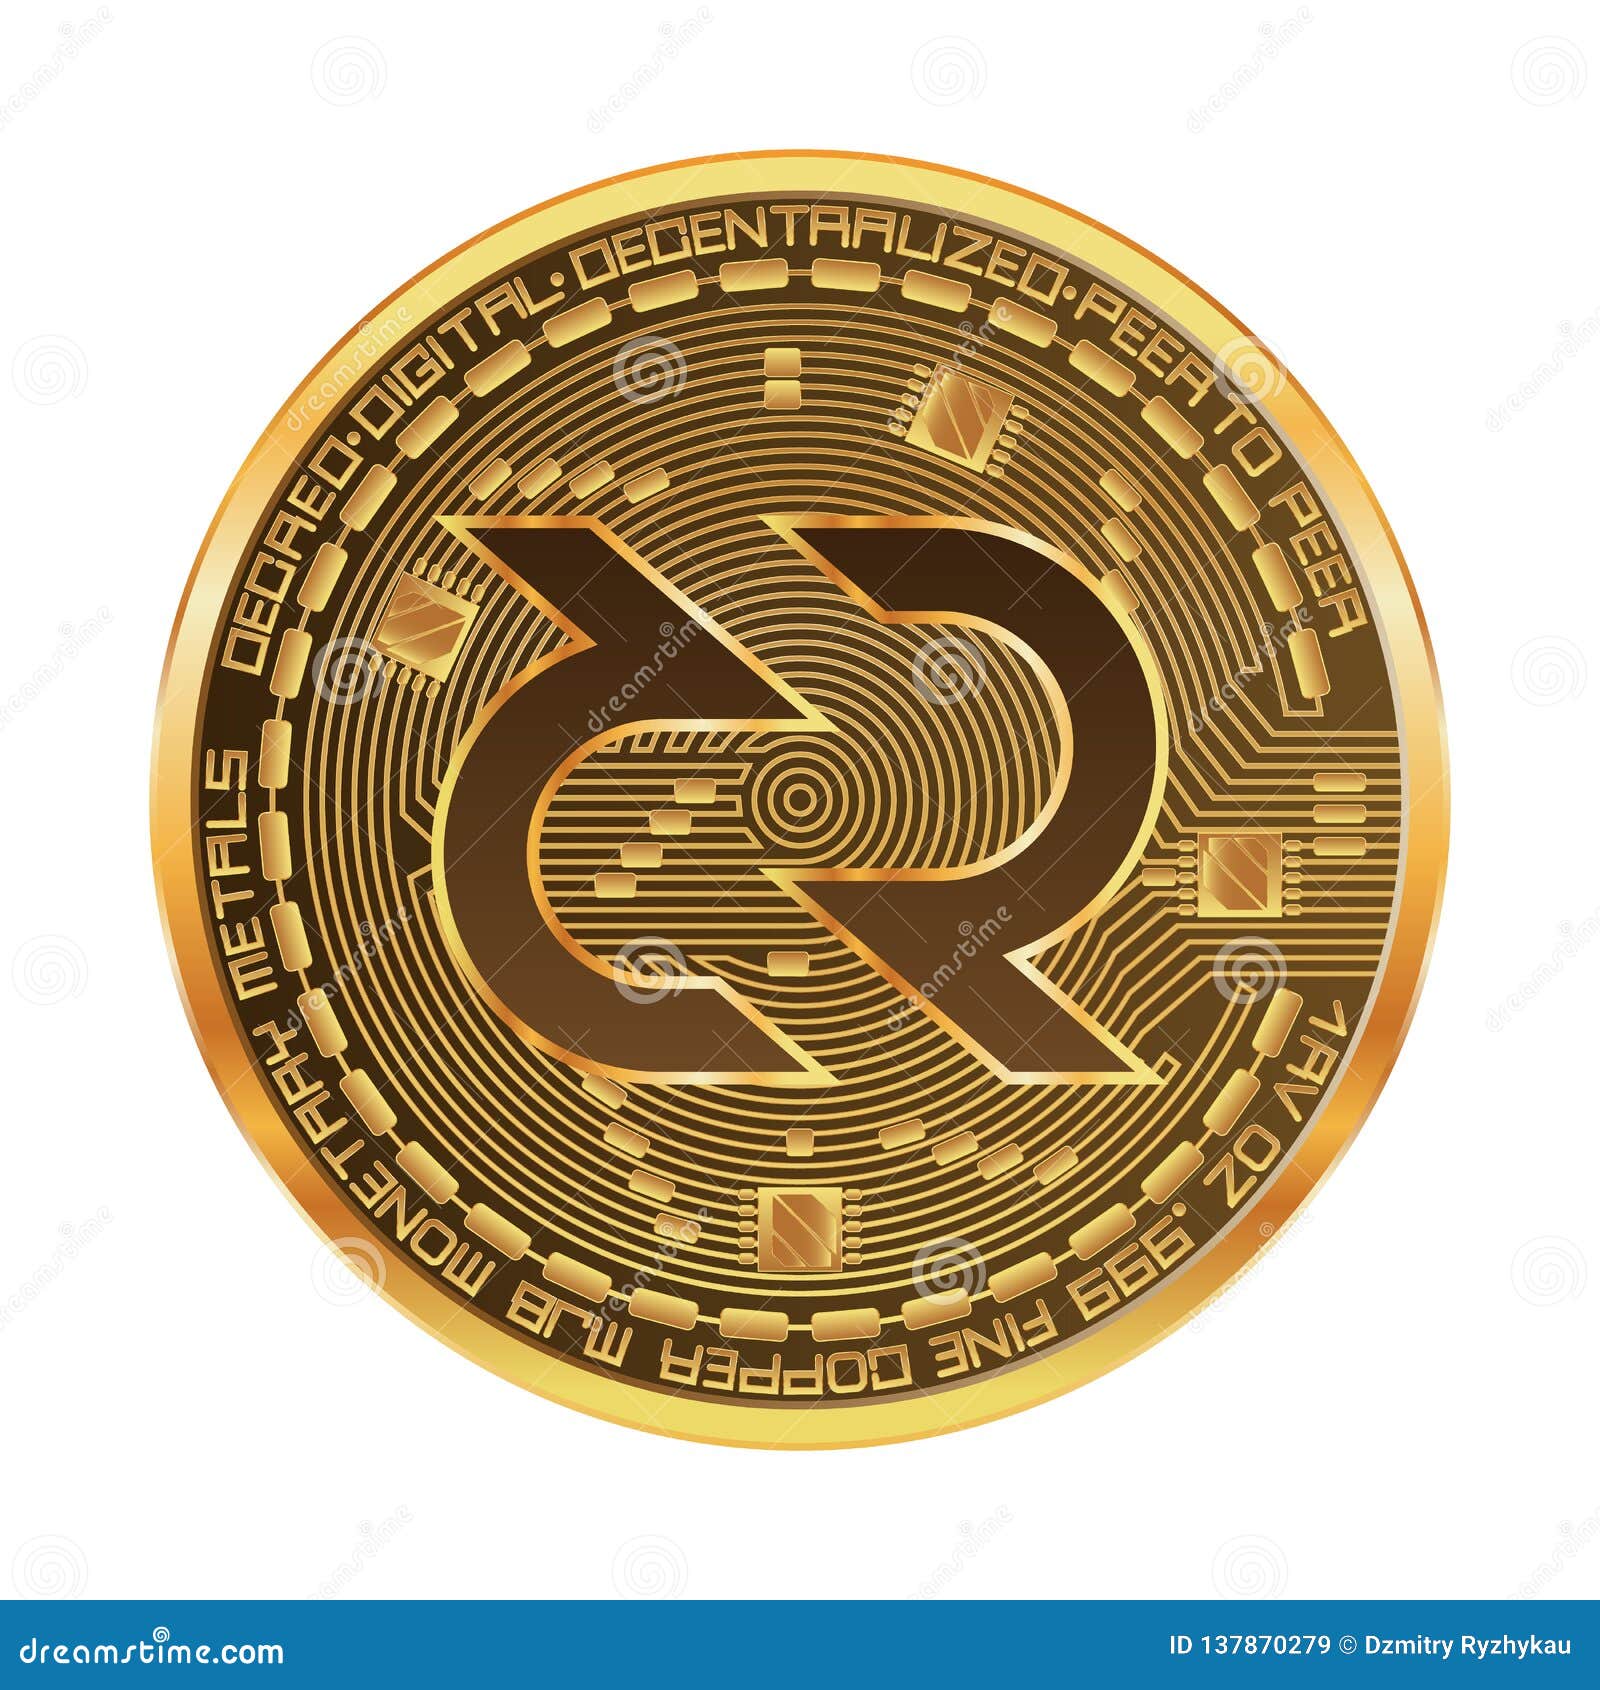 concept crypto-currencies logo